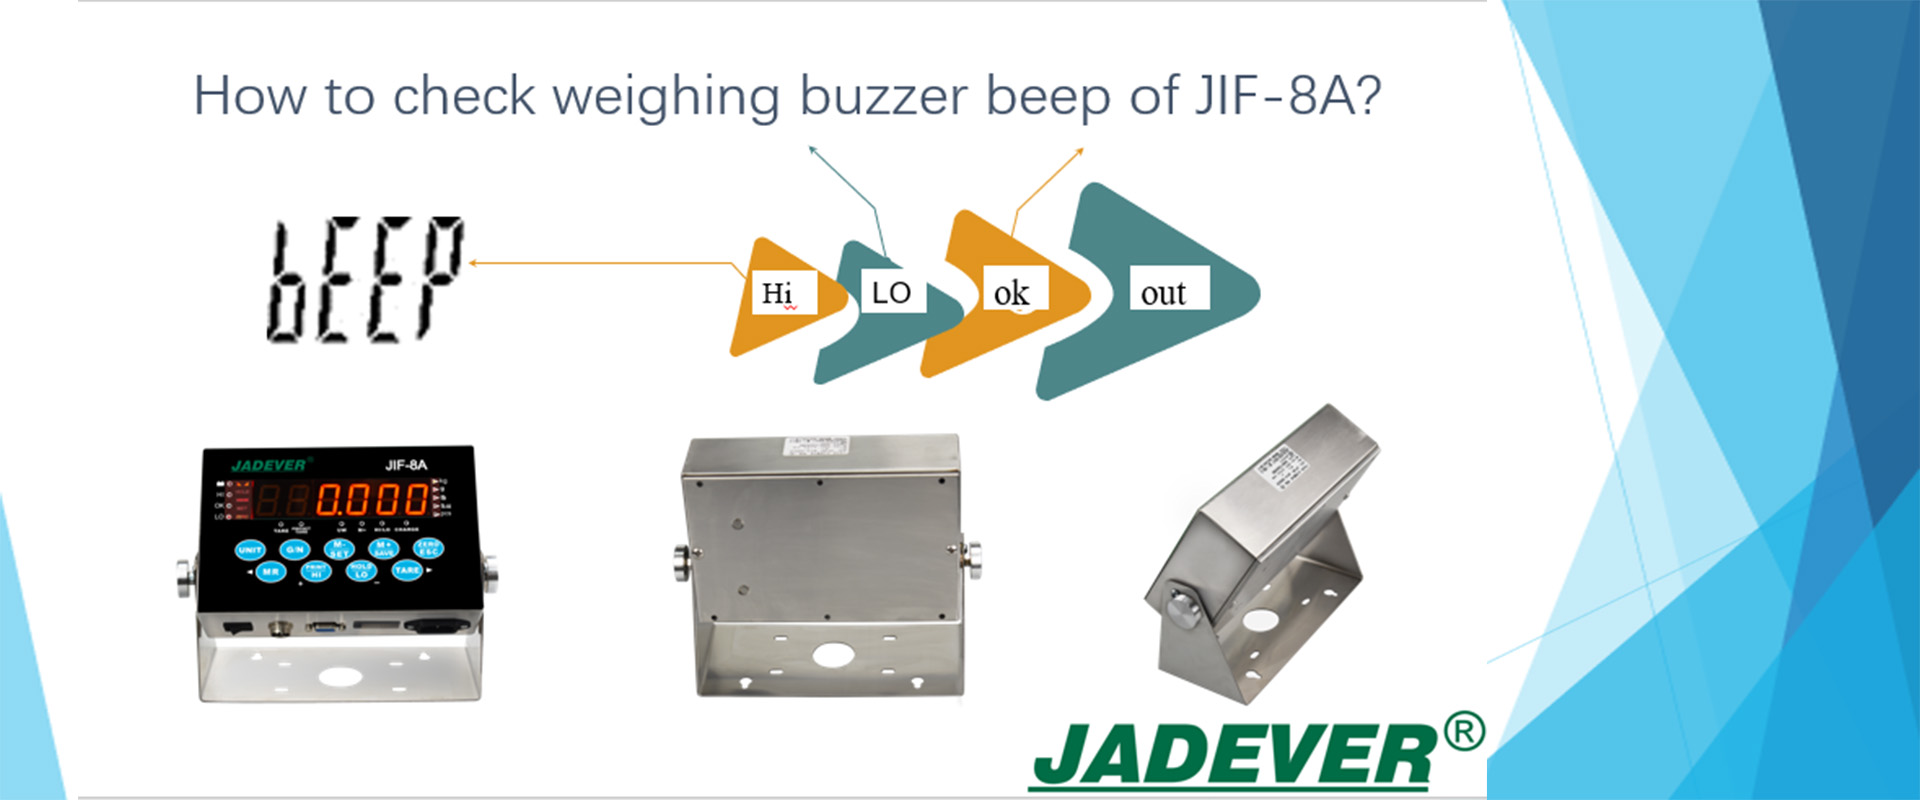 Como verificar o bip da campainha de pesagem do JIF-8A?
